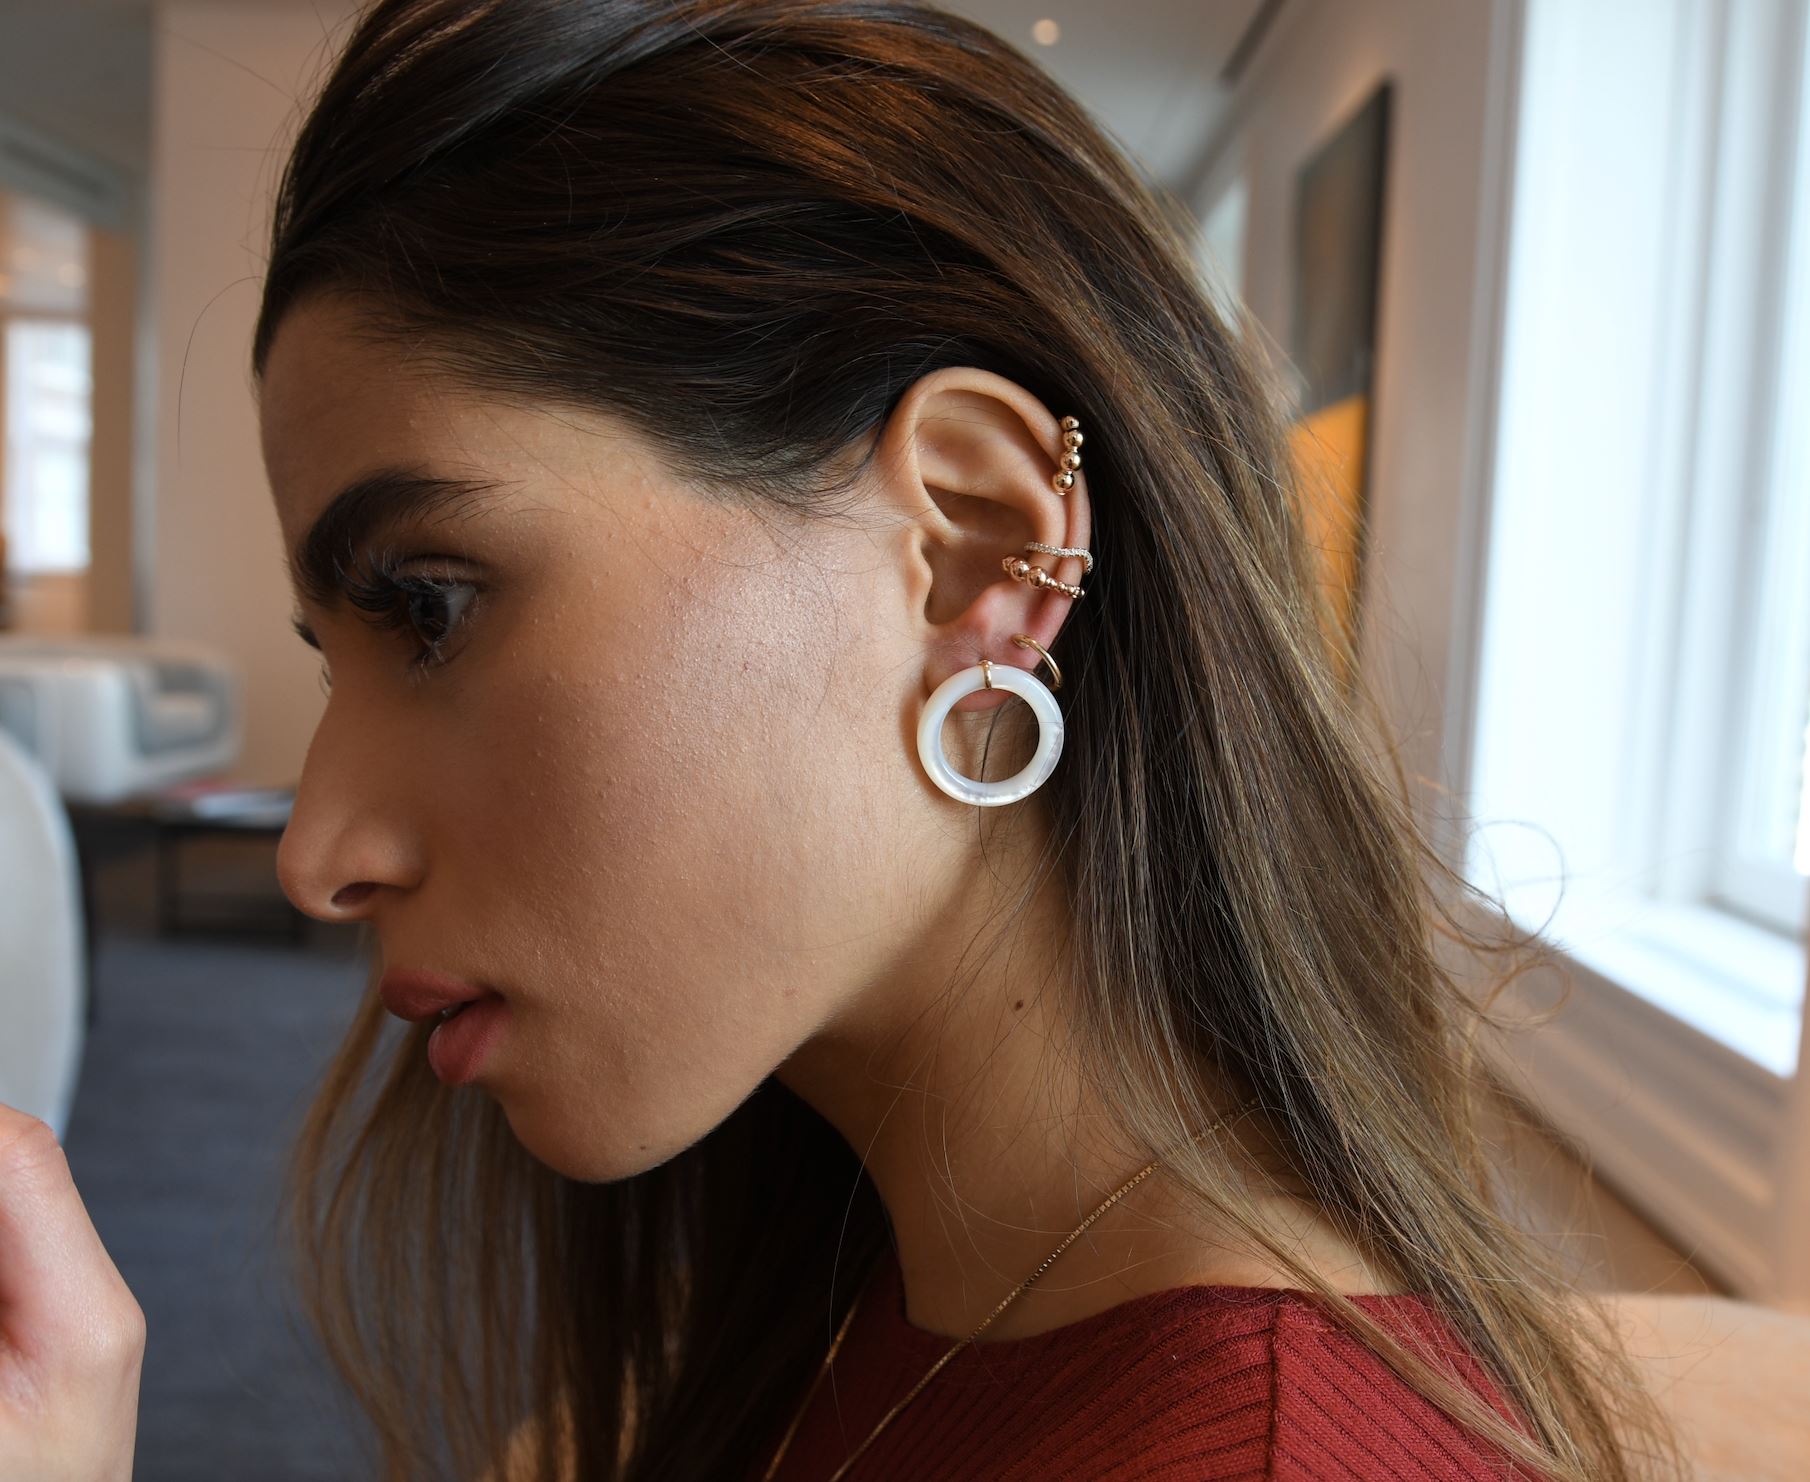 Emani Hinged Ear Cuff Earrings - BONDEYE JEWELRY ®